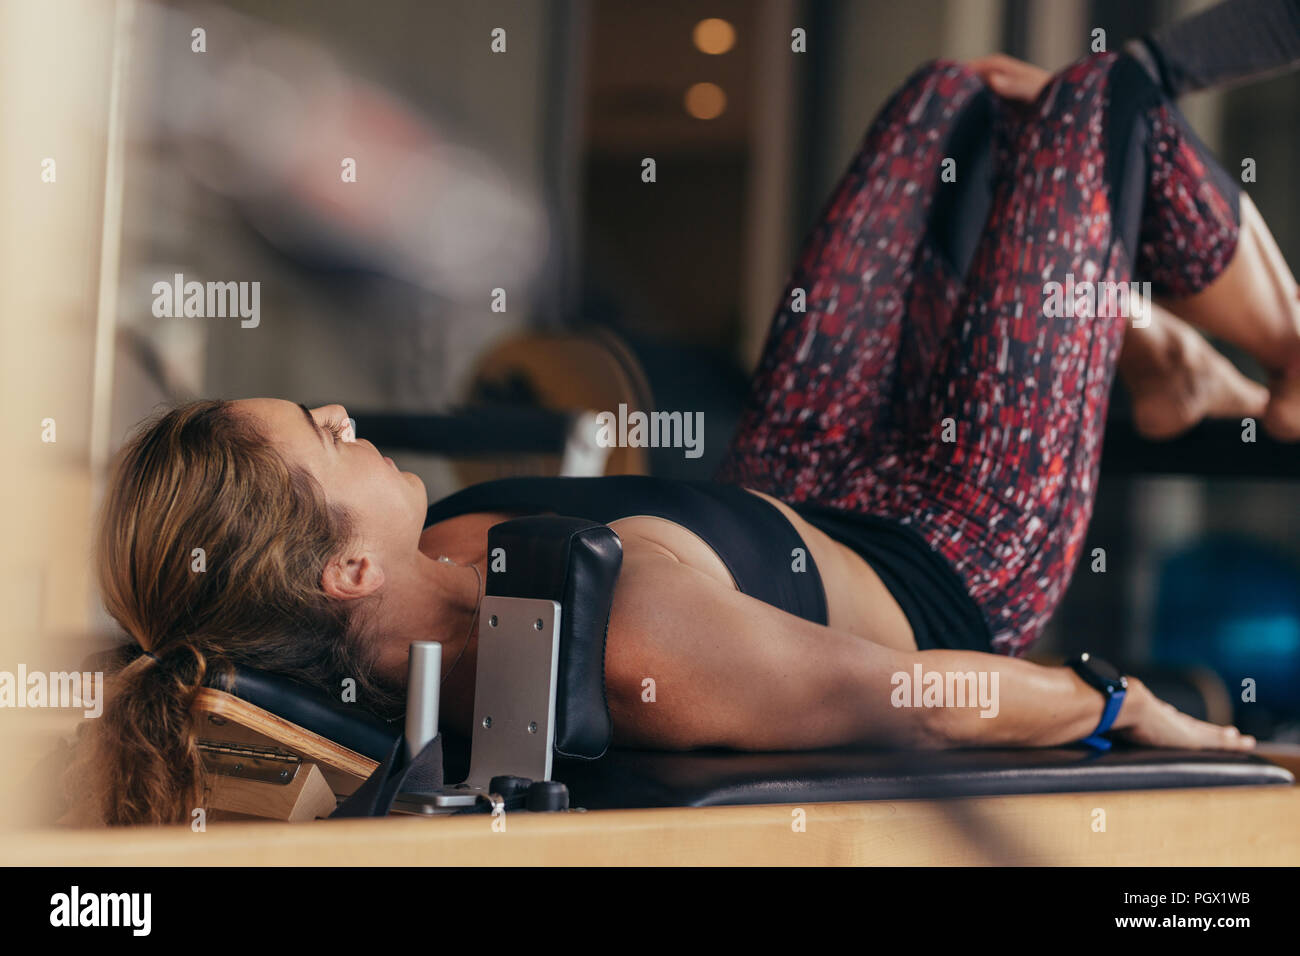 Fitness Frau tun Pilates Workout liegen auf einem Gerät. Pilates Frau an einem Gym Übungen. Stockfoto